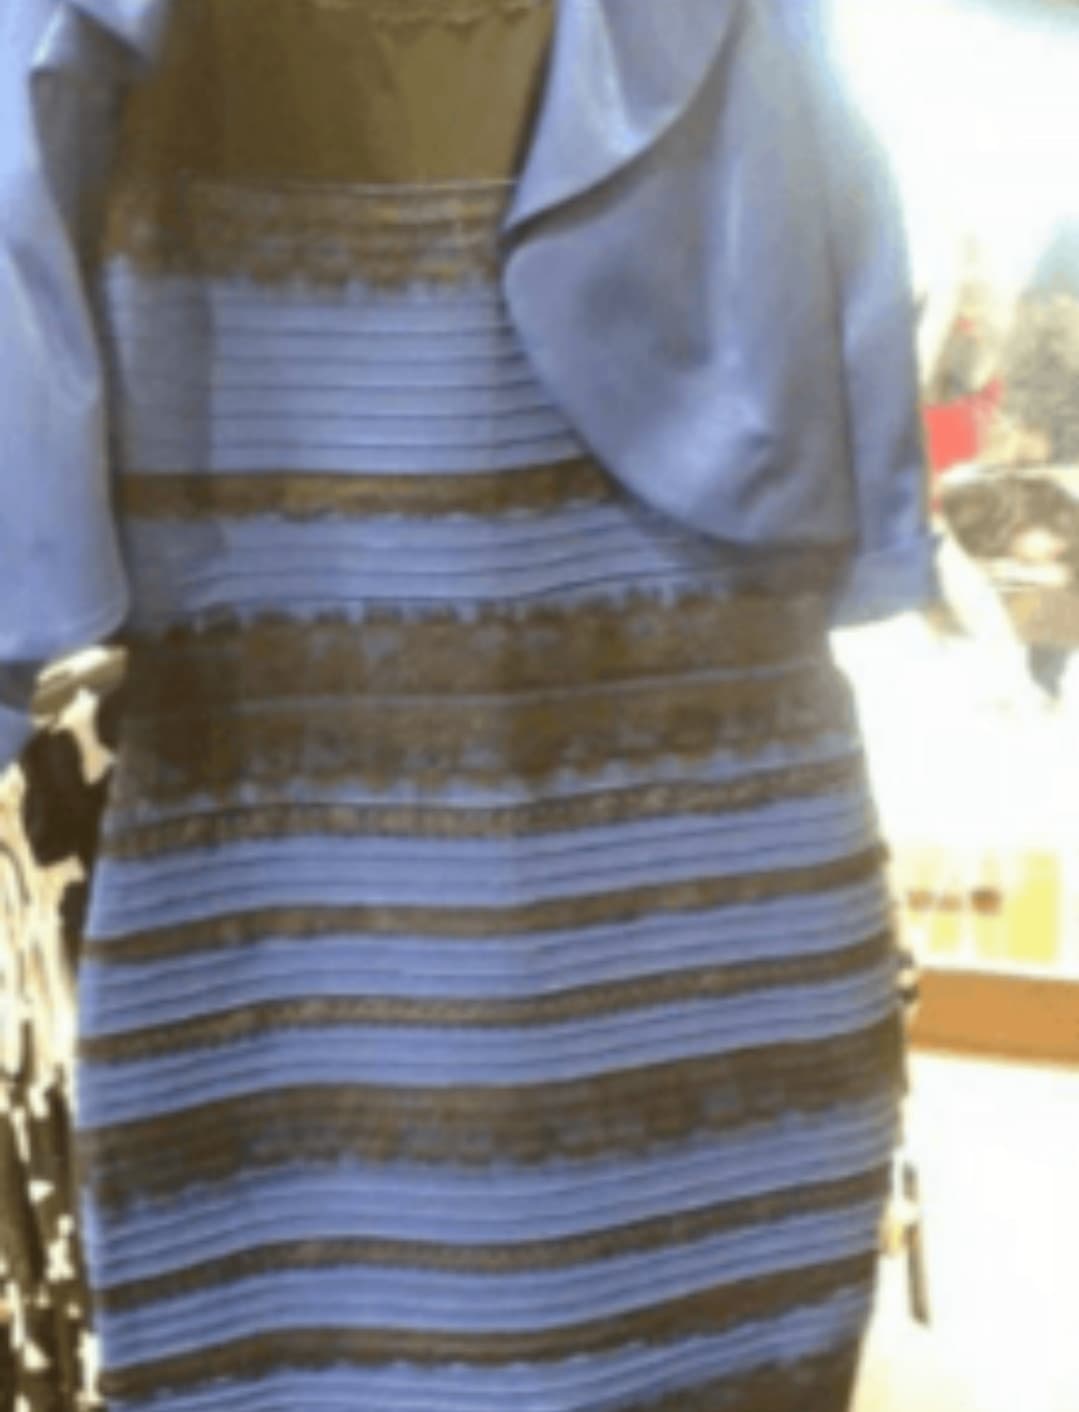 Lo so che è una foto vecchia ma scusate- come cazzo fate a vedere blu e nero, è pesemente bianco e oro